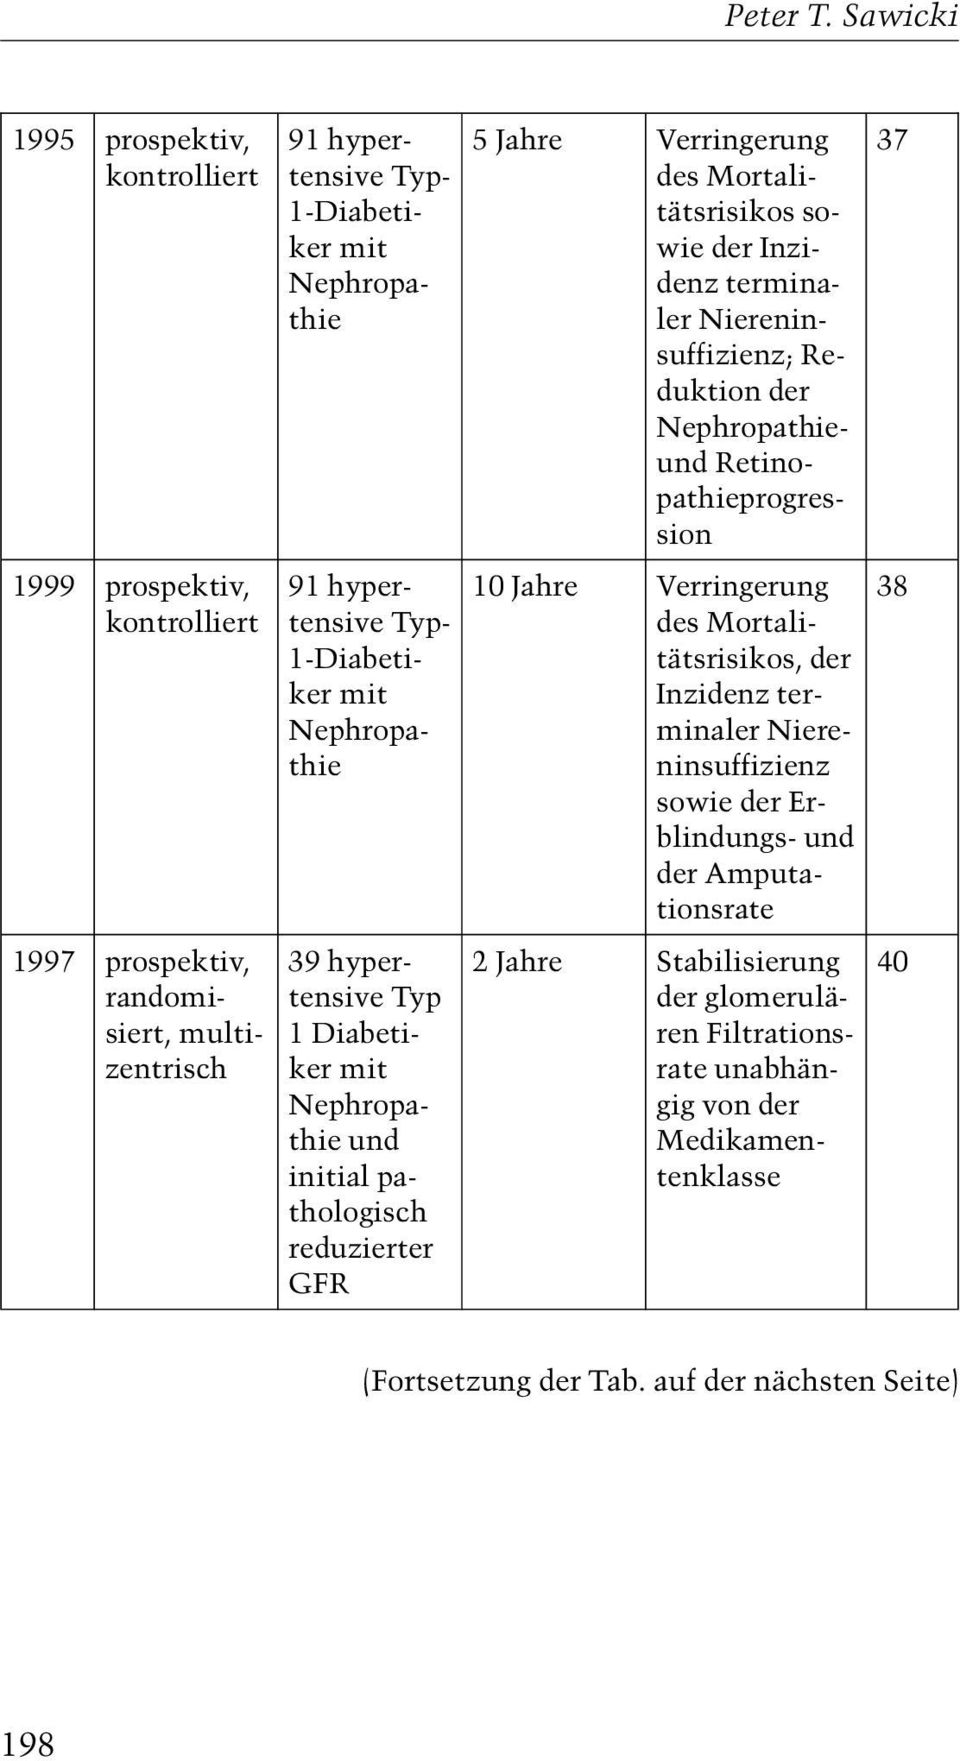 1-Diabetiker mit Nephropathie 39 hypertensive Typ 1 Diabetiker mit Nephropathie und initial pathologisch reduzierter GFR 5 Jahre Verringerung des Mortalitätsrisikos sowie der Inzidenz